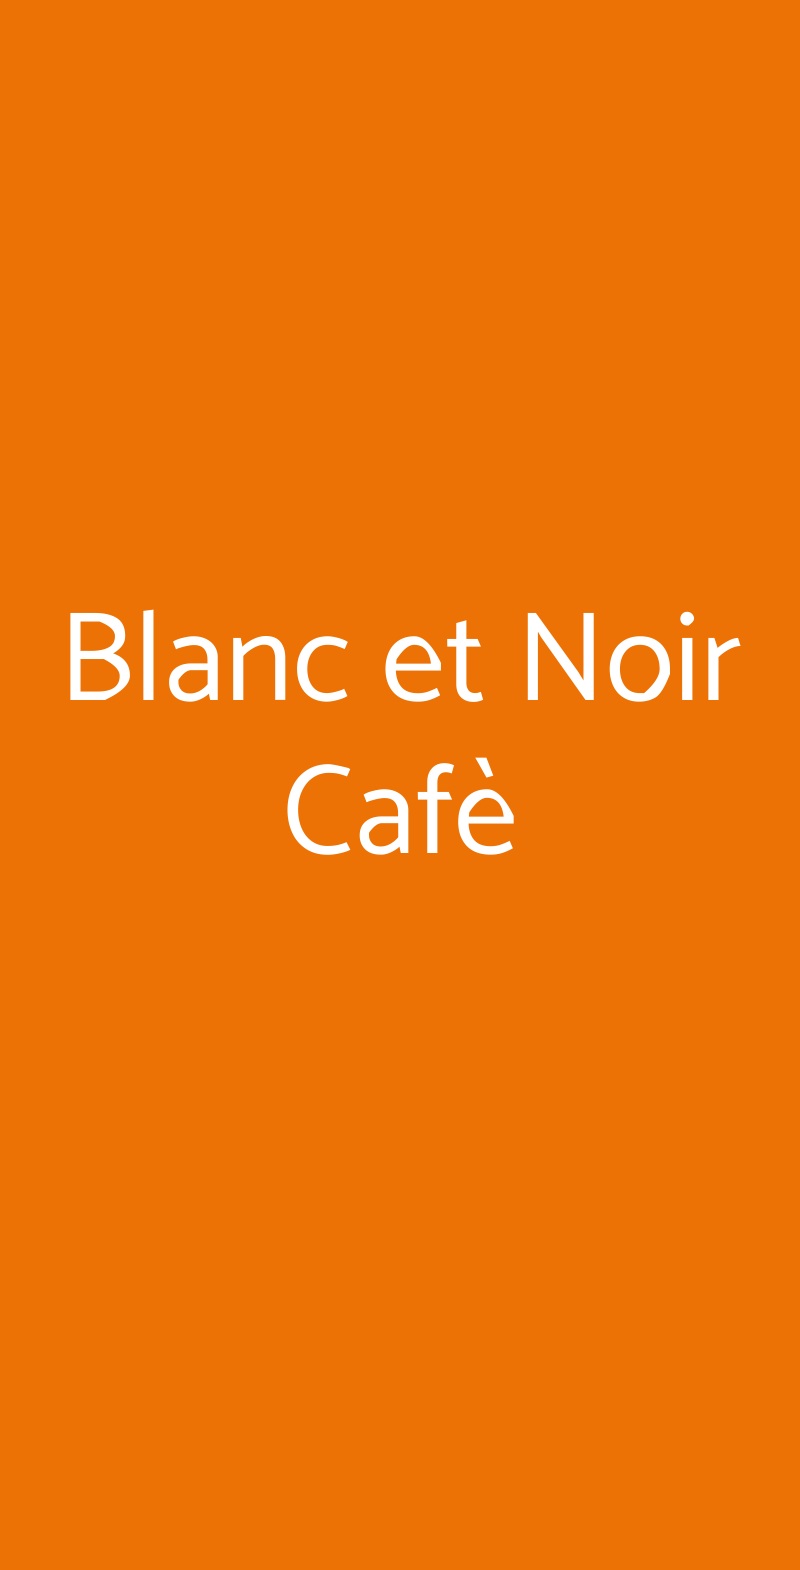 Blanc et Noir Cafè Livorno menù 1 pagina